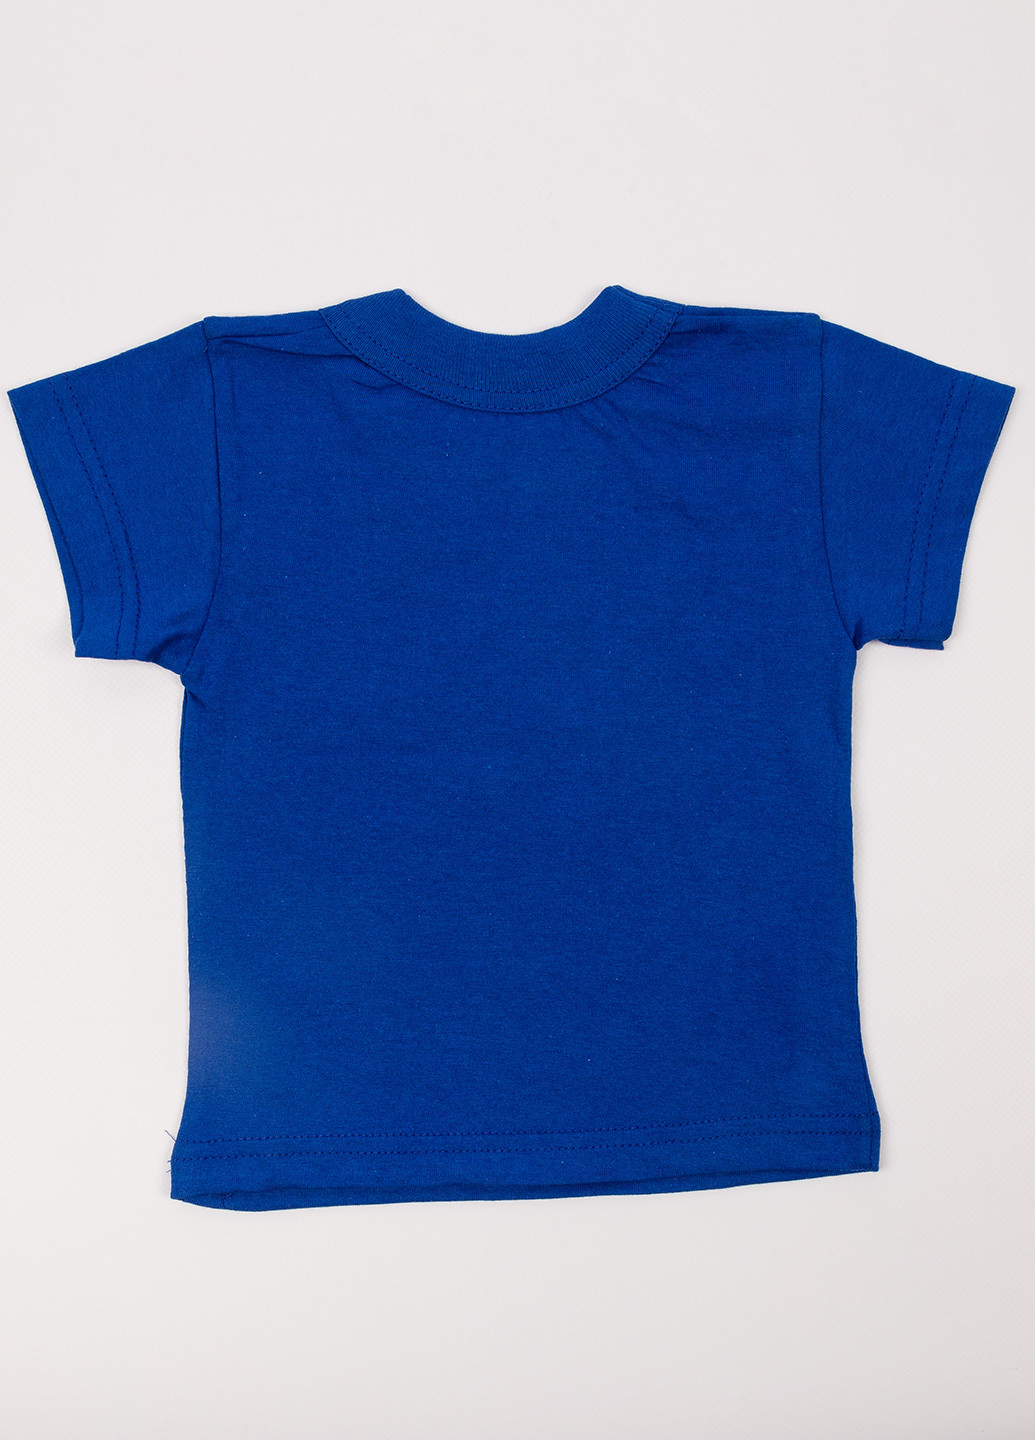 Синяя летняя футболка Пташка текстиль